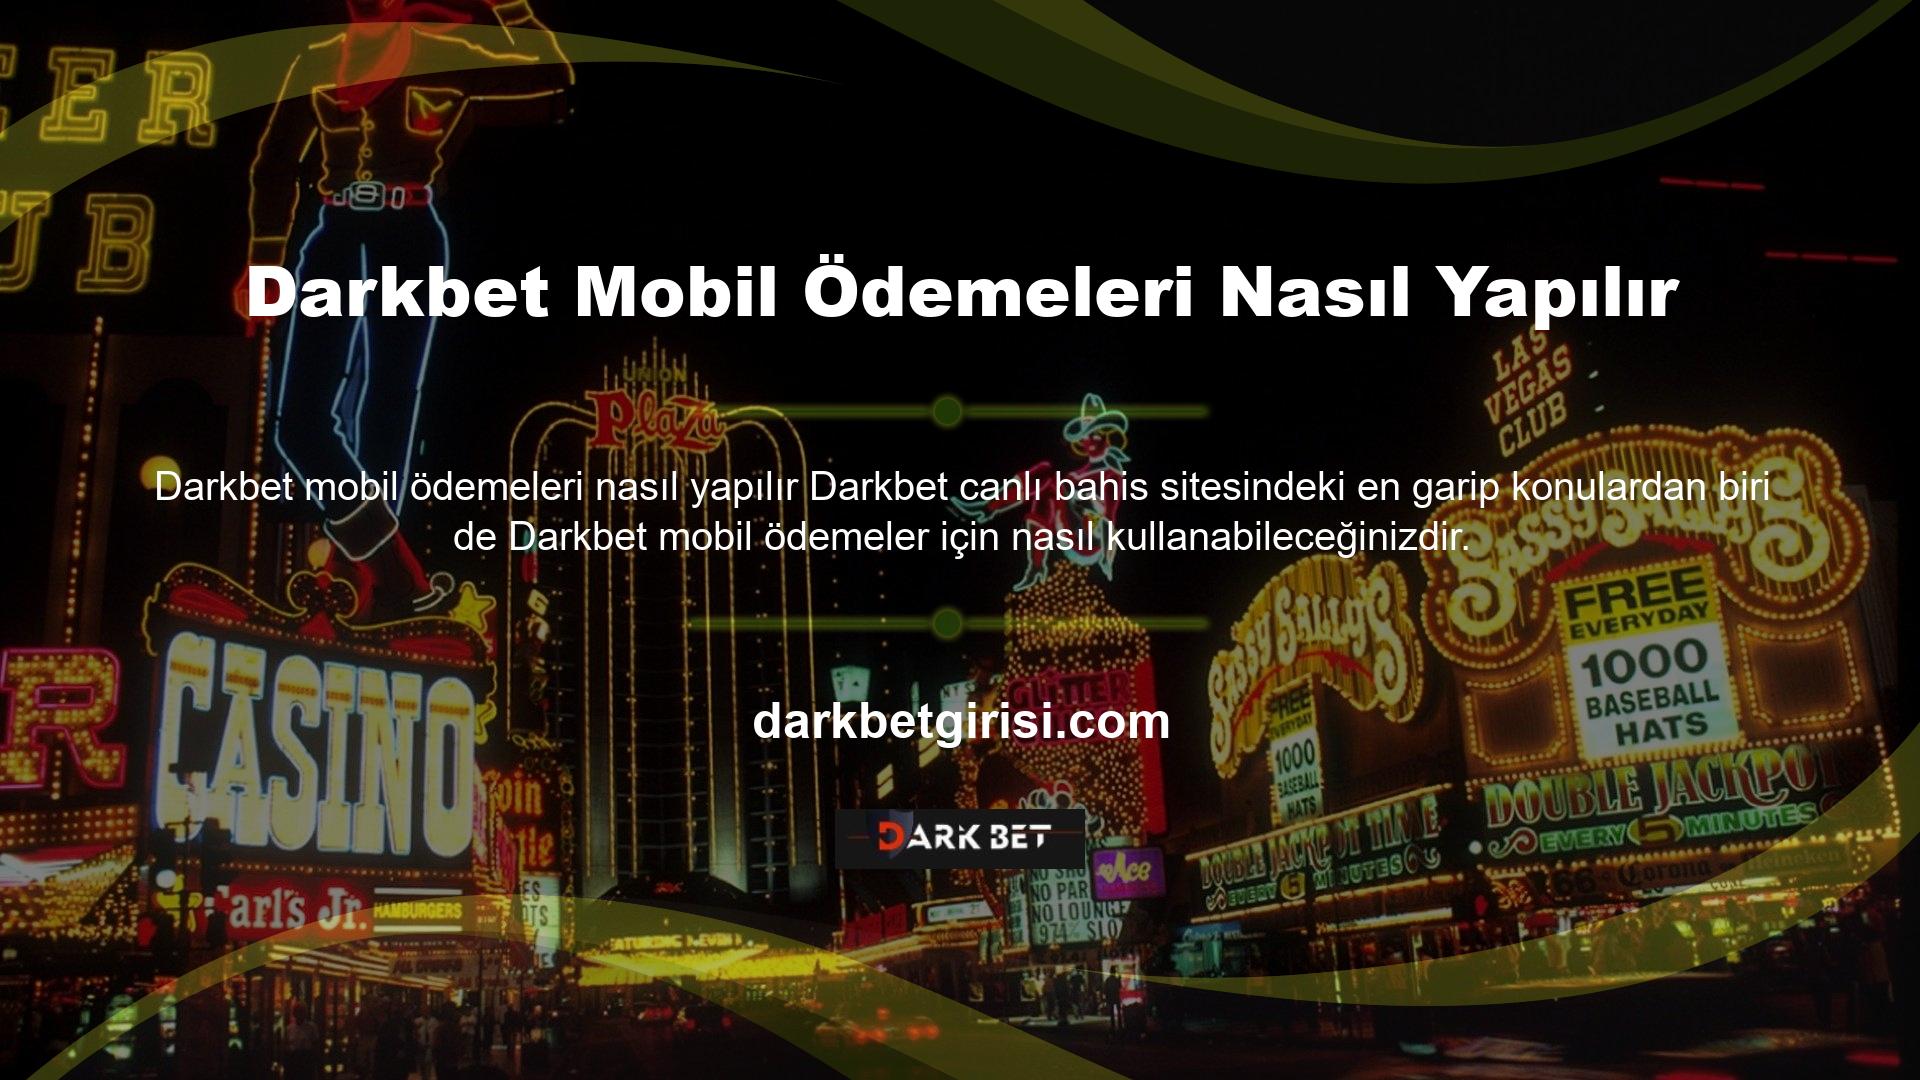 Darkbet hesabınıza para yatırmak için para transferlerinden, Darkbet Mobile dahil kripto para birimlerine kadar çeşitli seçenekler bulunmaktadır